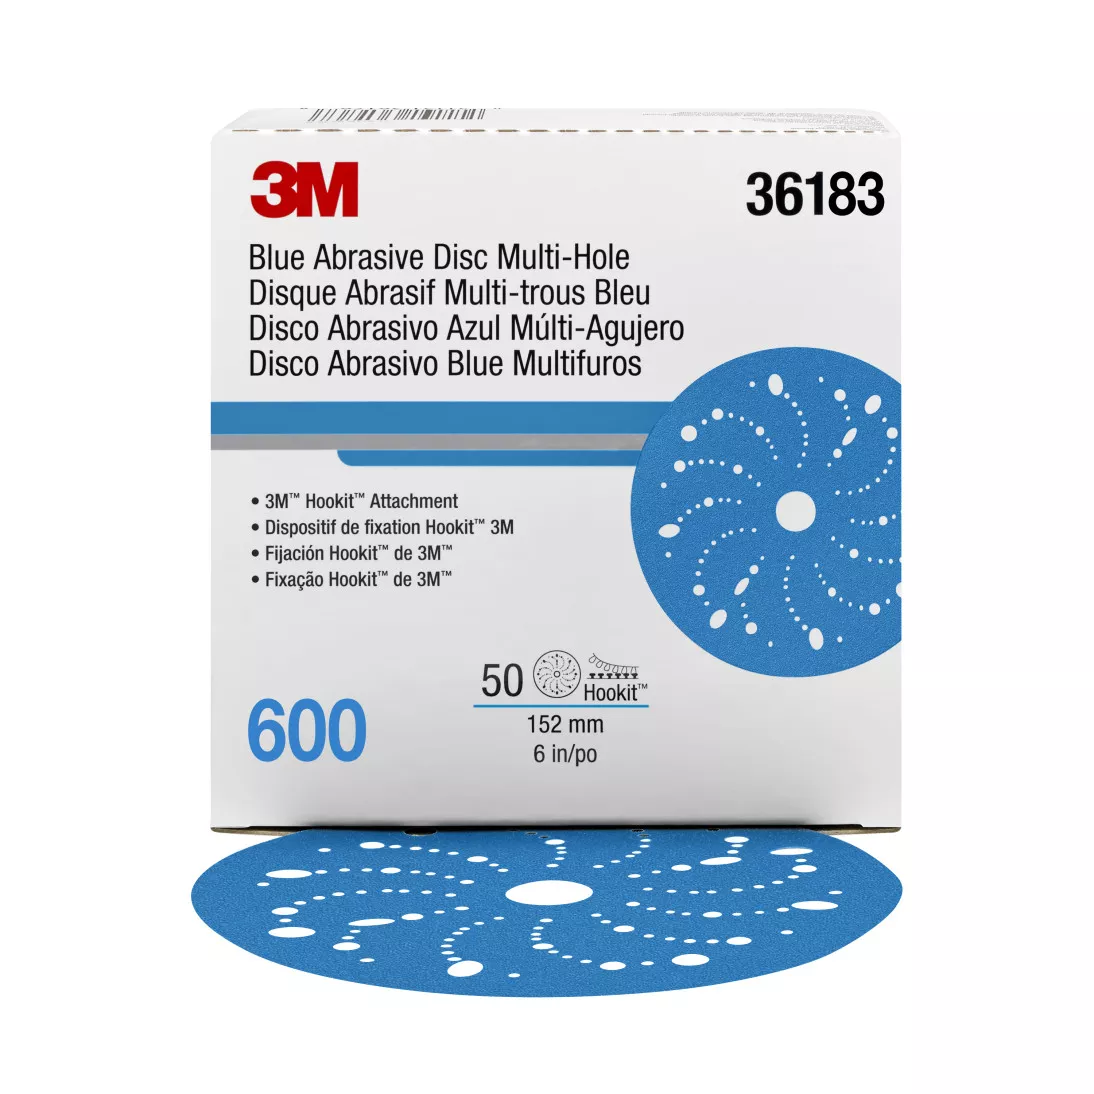 3M™ Hookit™ Blue Abrasive Disc 321U Multi-hole, 36183, 6 in, 600, 50
discs per carton, 4 cartons per case